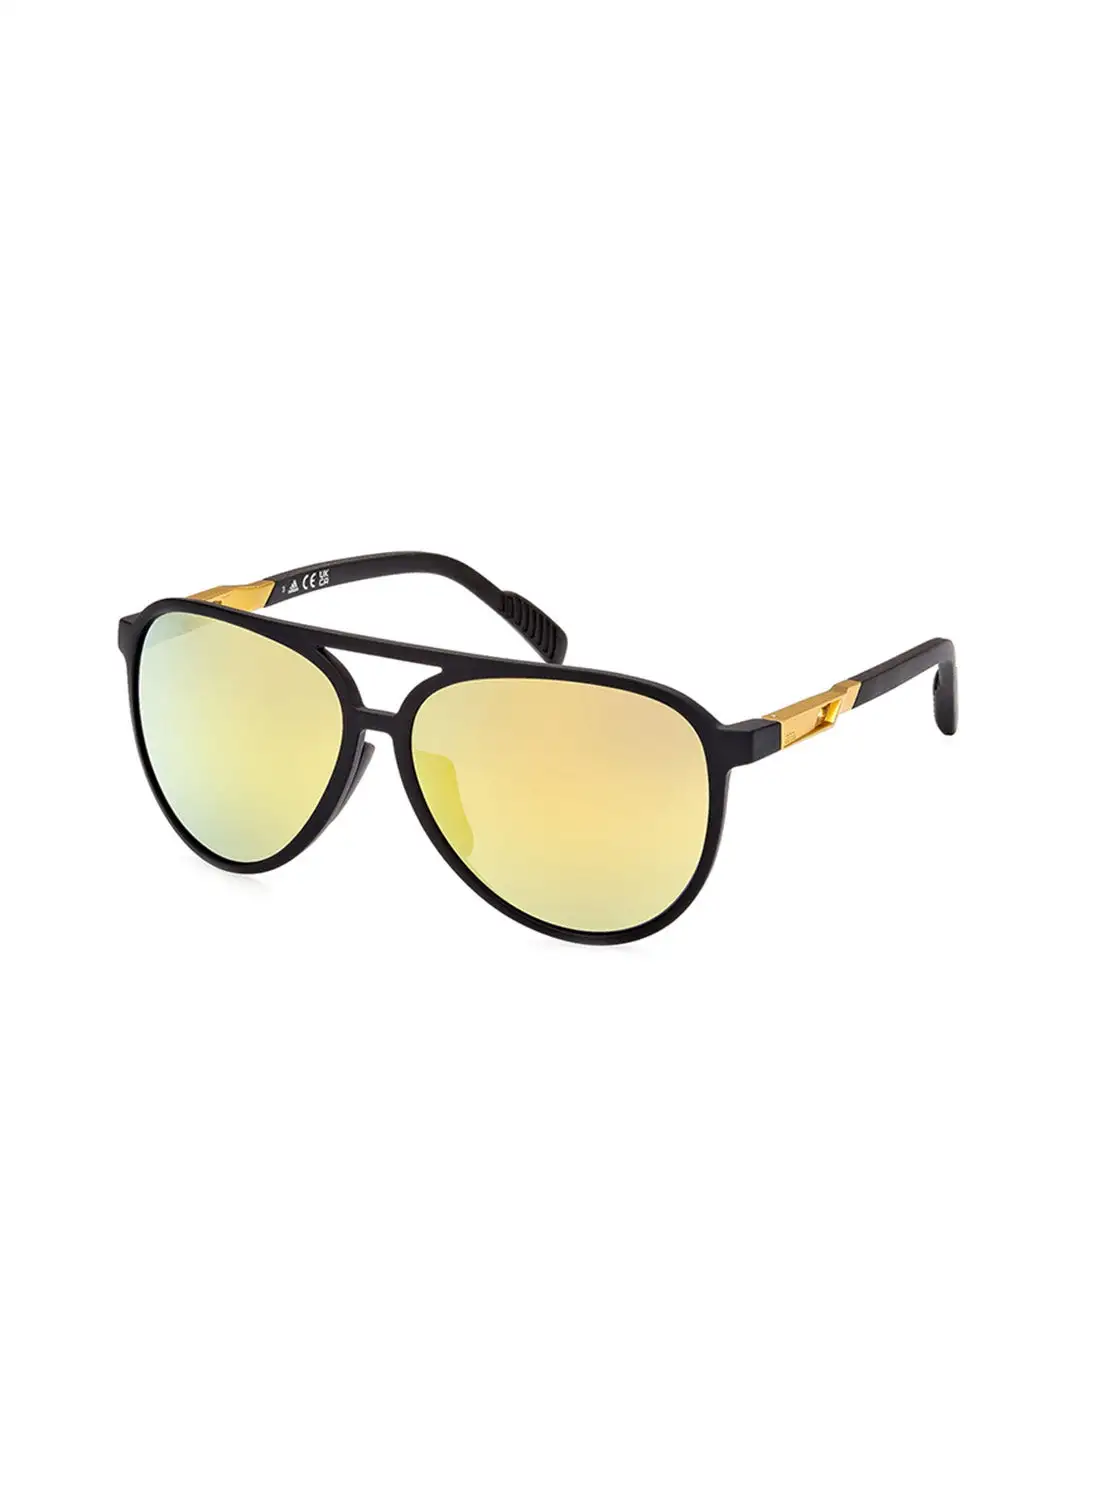 نظارة شمسية للجنسين من اديداس، حماية من الأشعة فوق البنفسجية - SP006002G58 - مقاس العدسة: 58 ملم